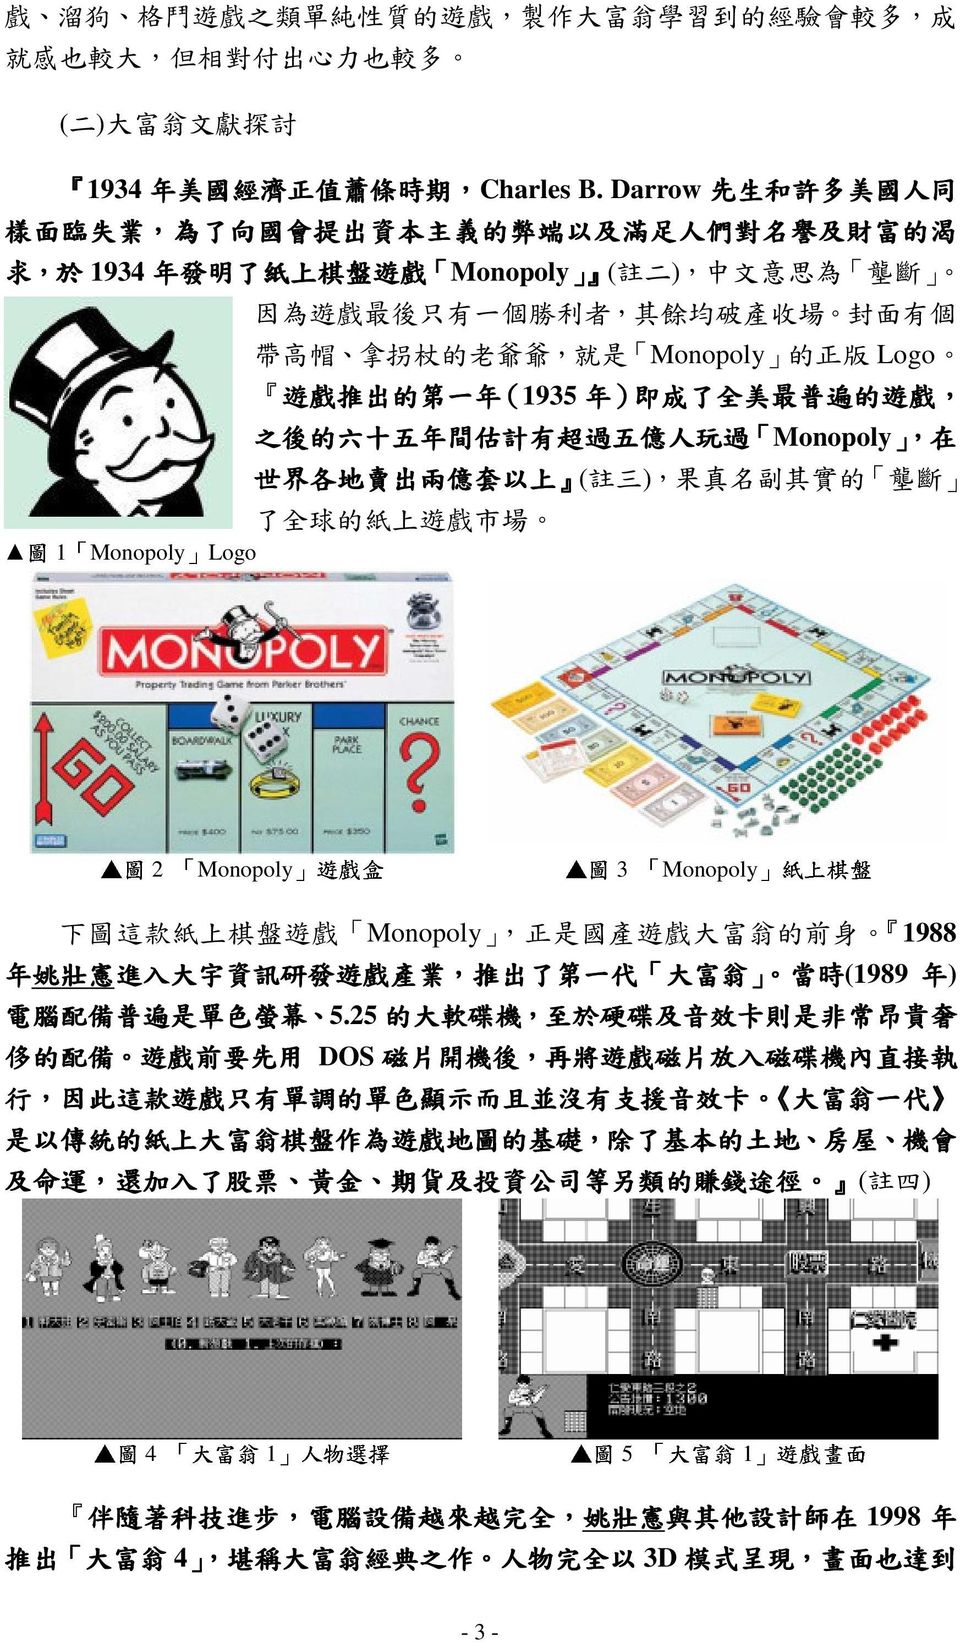 餘 均 破 產 收 場 封 面 有 個 帶 高 帽 拿 拐 杖 的 老 爺 爺, 就 是 Monopoly 的 正 版 Logo 遊 戲 推 出 的 第 一 年 (1935 年 ) 即 成 了 全 美 最 普 遍 的 遊 戲, 之 後 的 六 十 五 年 間 估 計 有 超 過 五 億 人 玩 過 Monopoly,,,, 在 世 界 各 地 賣 出 兩 億 套 以 上 ( 註 三 ), 果 真